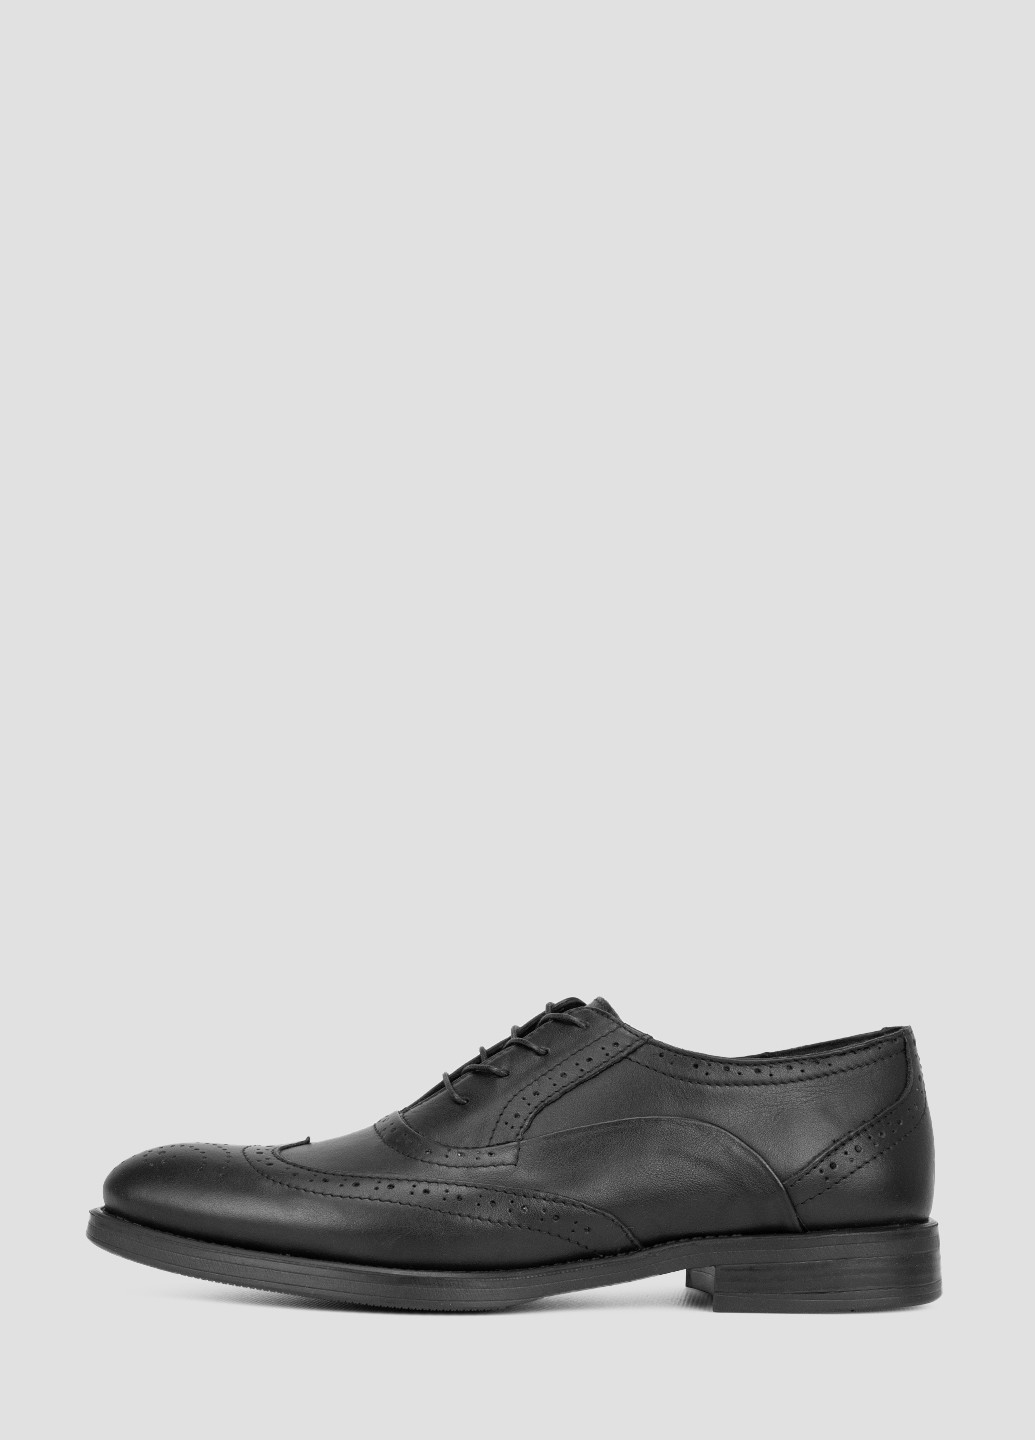 Черные классические туфли Lioneli на шнурках